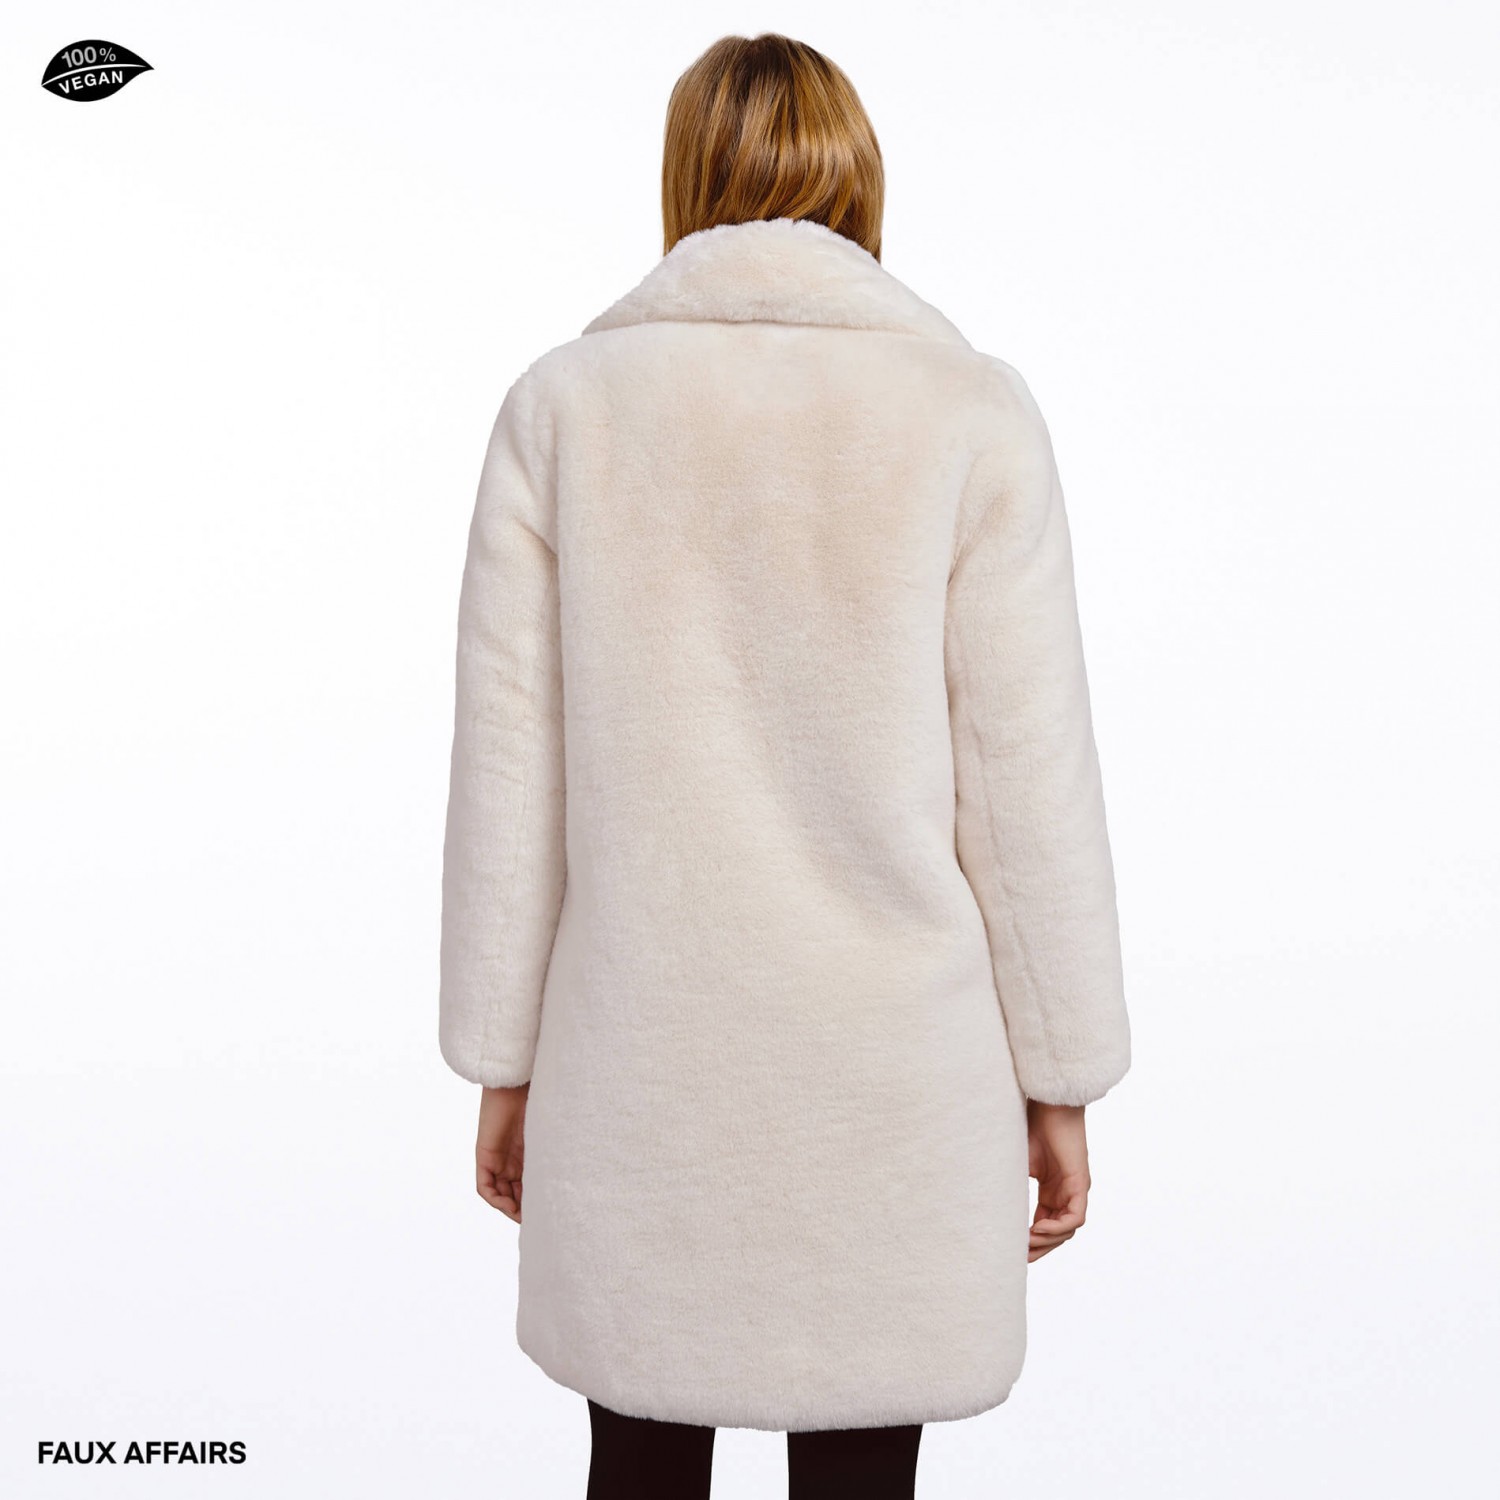 white faux fur coat